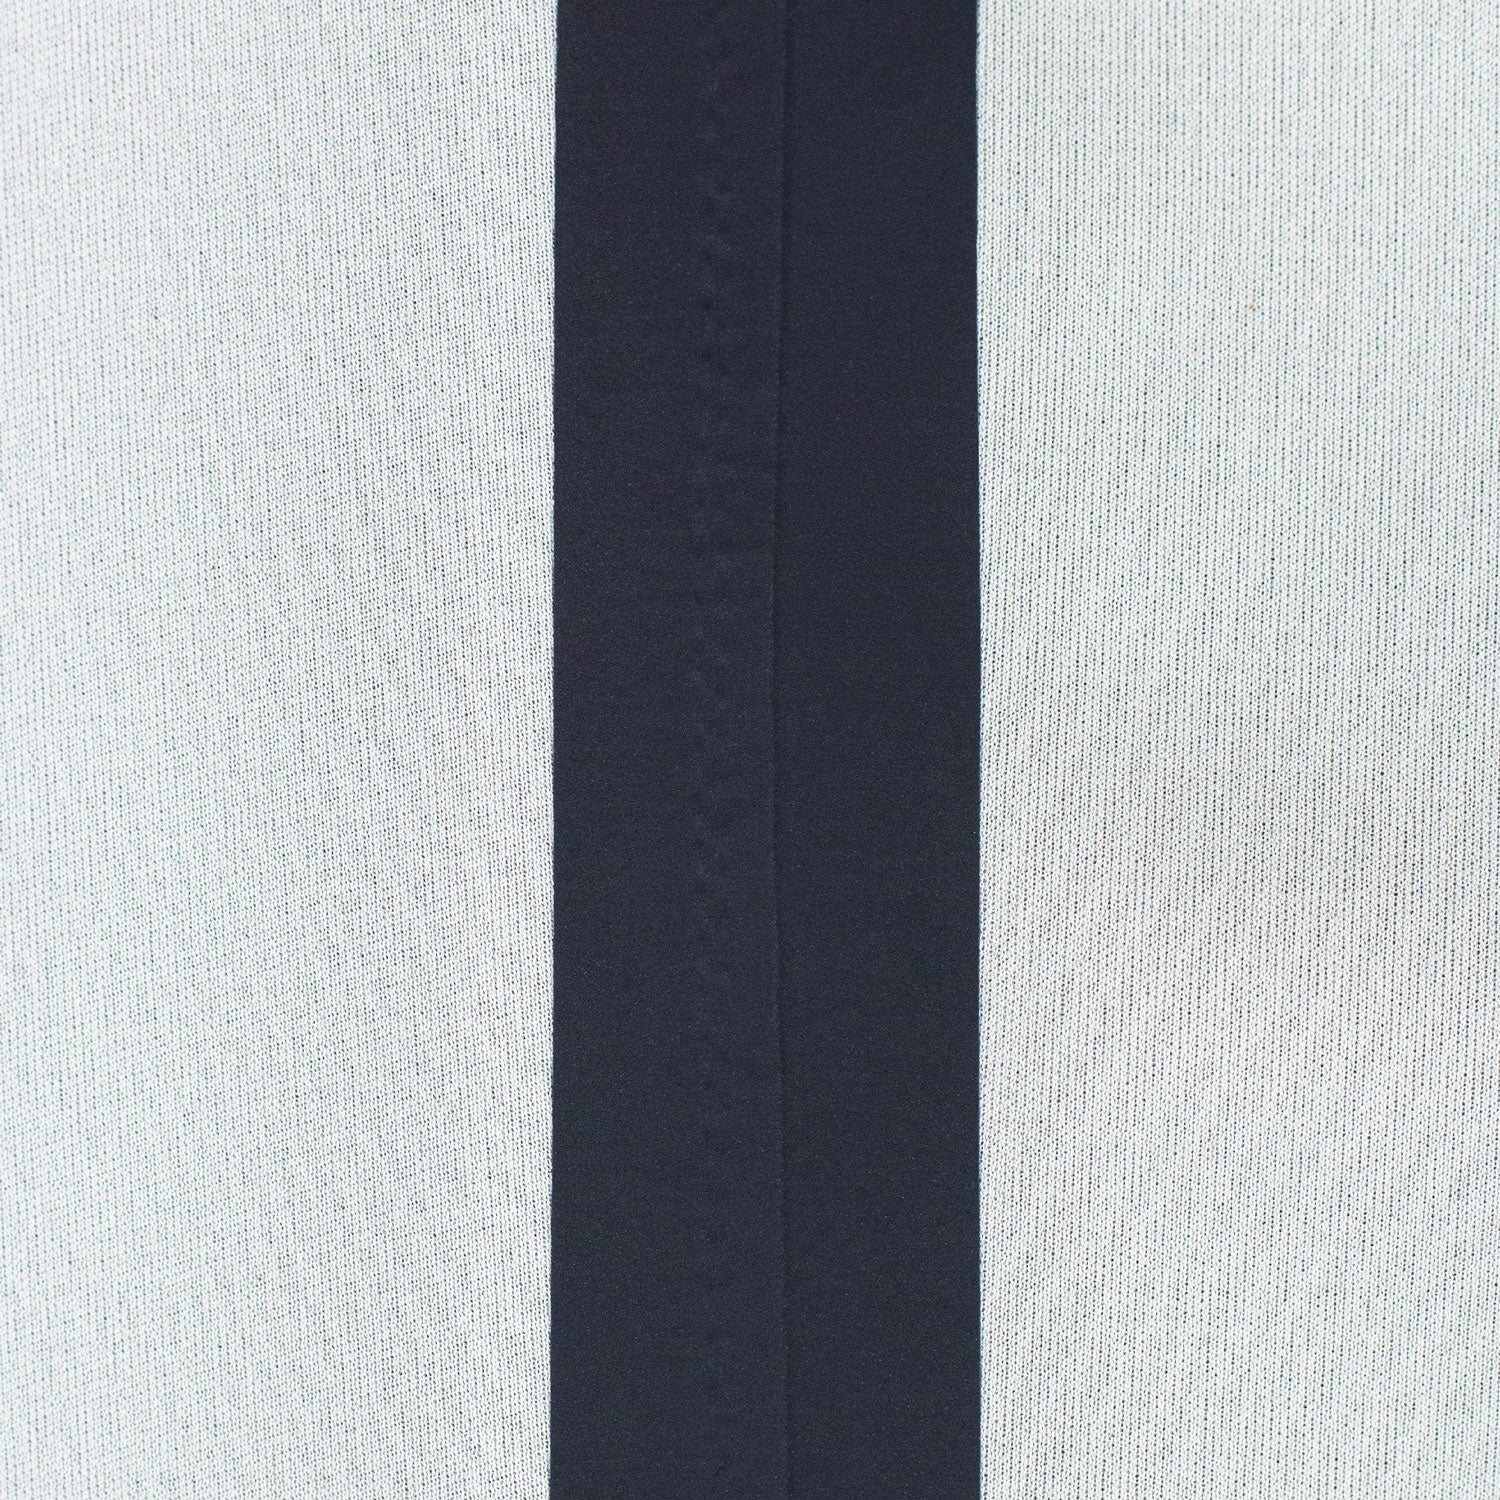 Chamarra corta sport en color gris impermeable con gorro desmontable